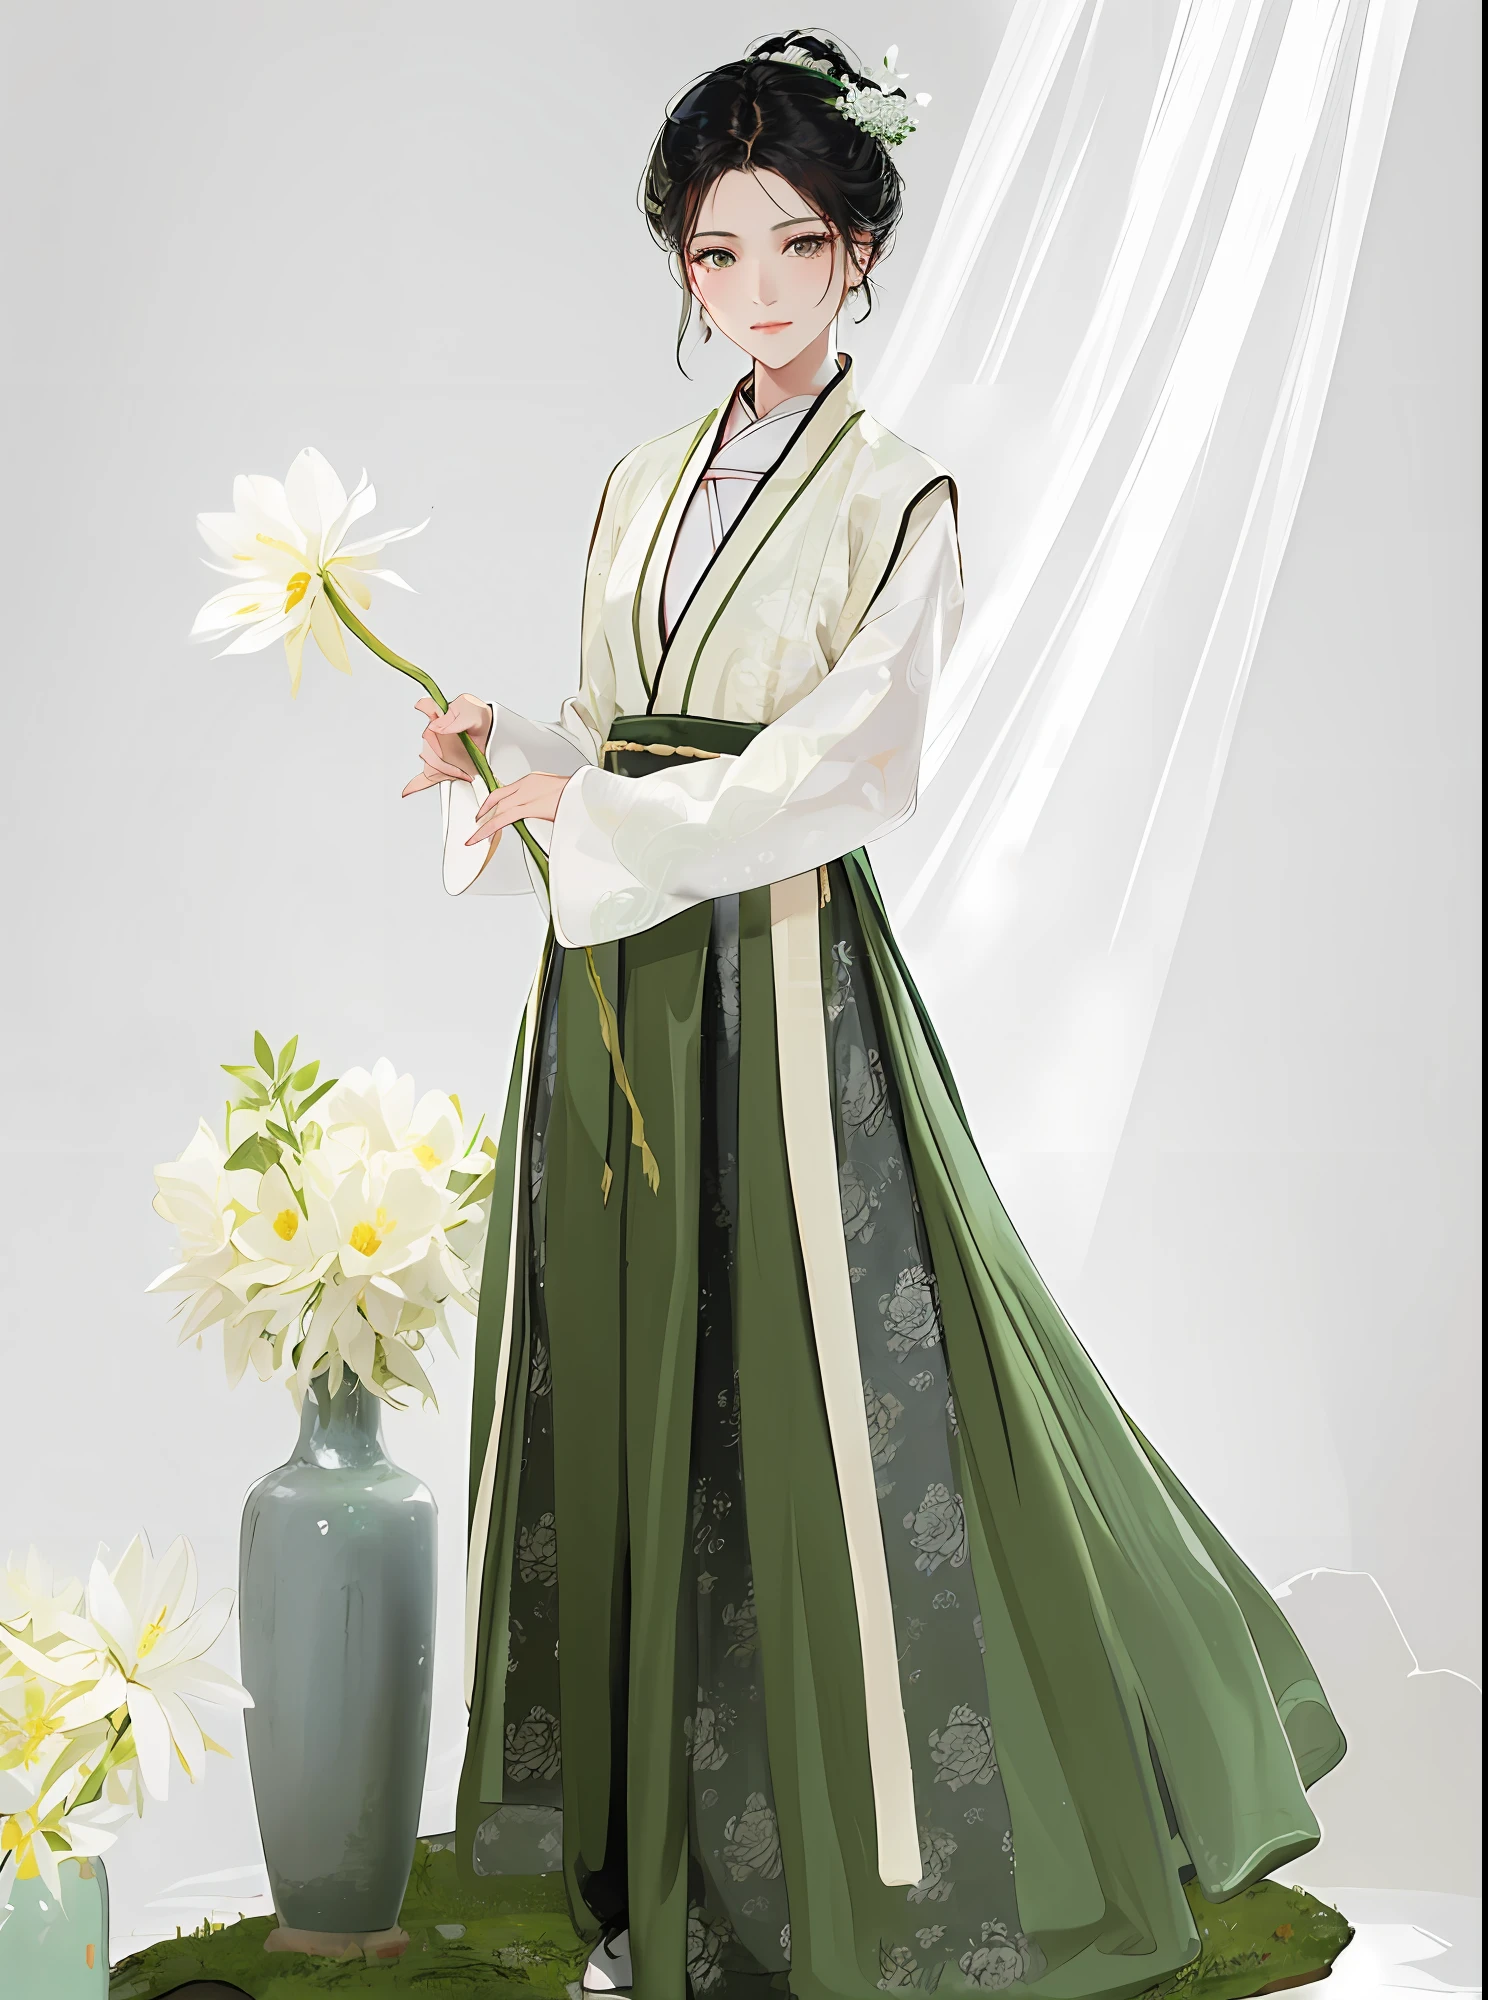 Araffe Frau in einem grün-weißen Kleid hält eine Blume, hanfu, das Tragen antiker chinesischer Kleidung, weißer Hanfu, traditionelle chinesische Kleidung, mit antiker chinesischer Kleidung, Palast ， Ein Mädchen in Hanfu, Chinesisches Kostüm, inspiriert von Gu An, inspiriert von Kaiser Huizong von Song, traditionelles Kleid, kaiserliche, königliche, elegante Kleidung, traditionelle Kleidung